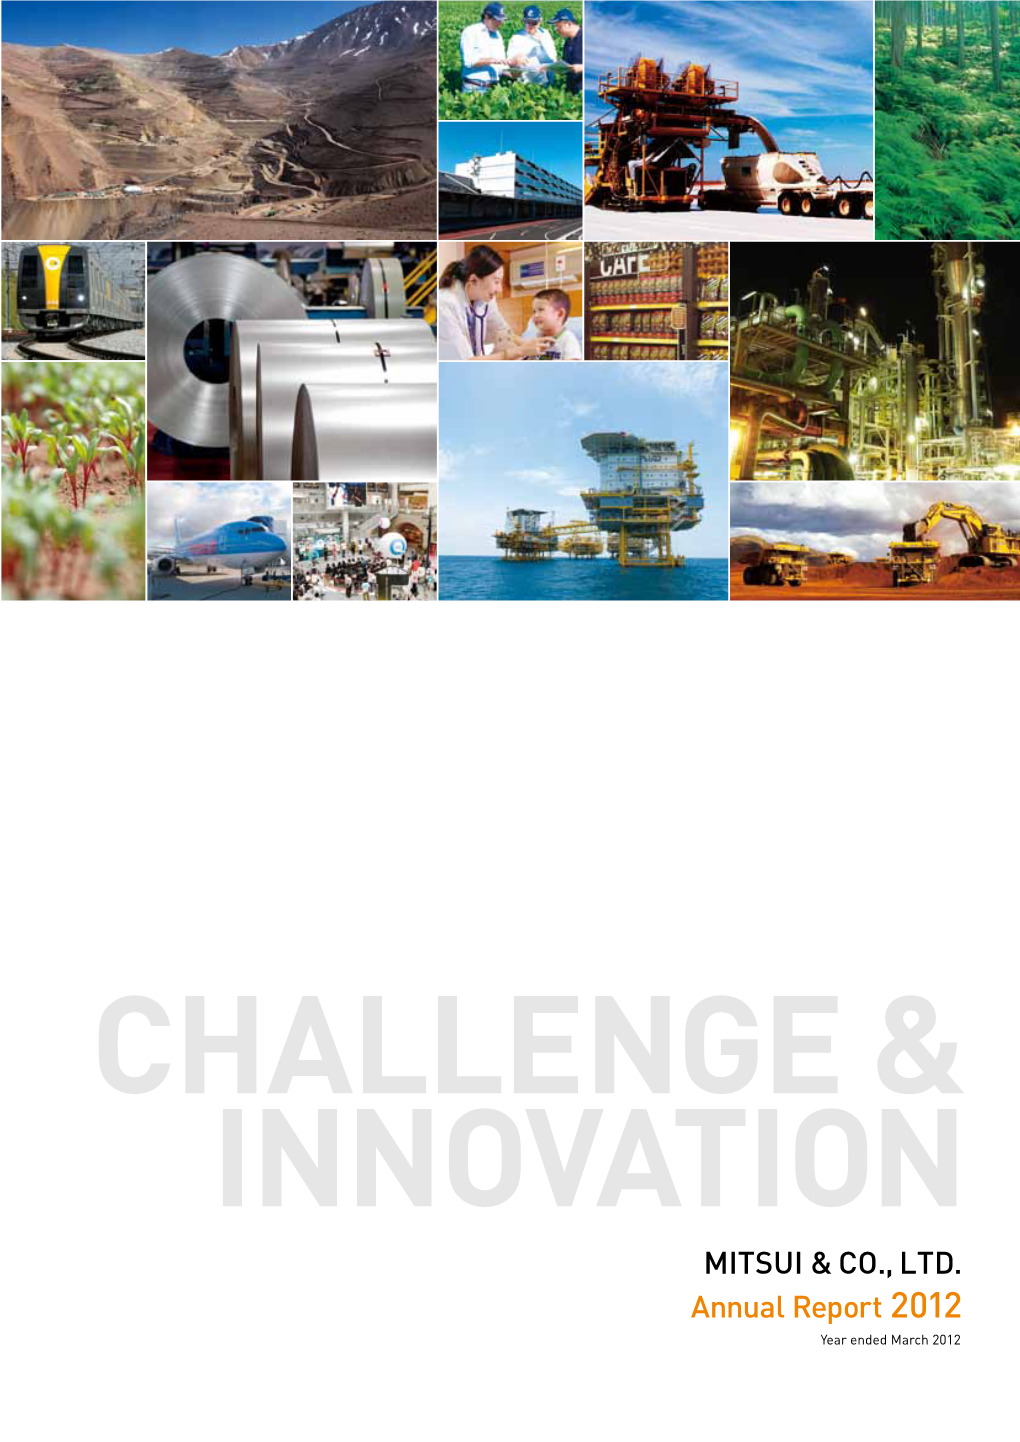 MITSUI & CO., LTD. Annual Report 2012